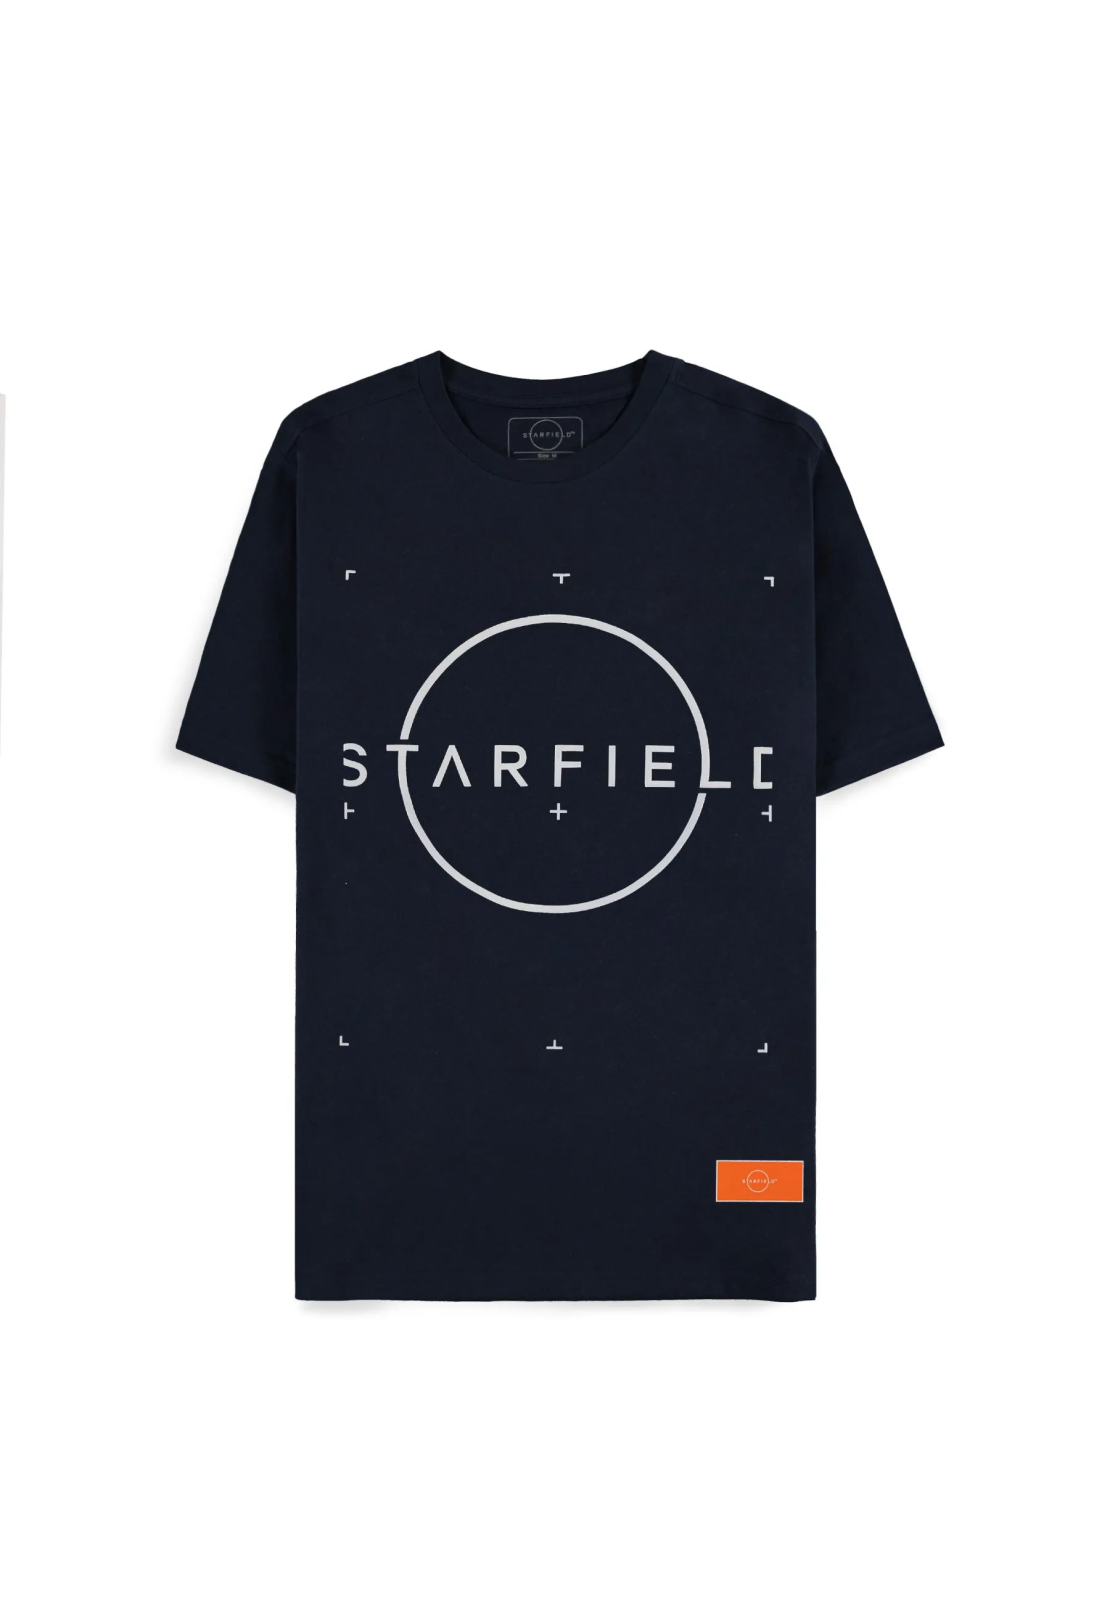 חולצת סטארפילד - לוגו סטארפילד